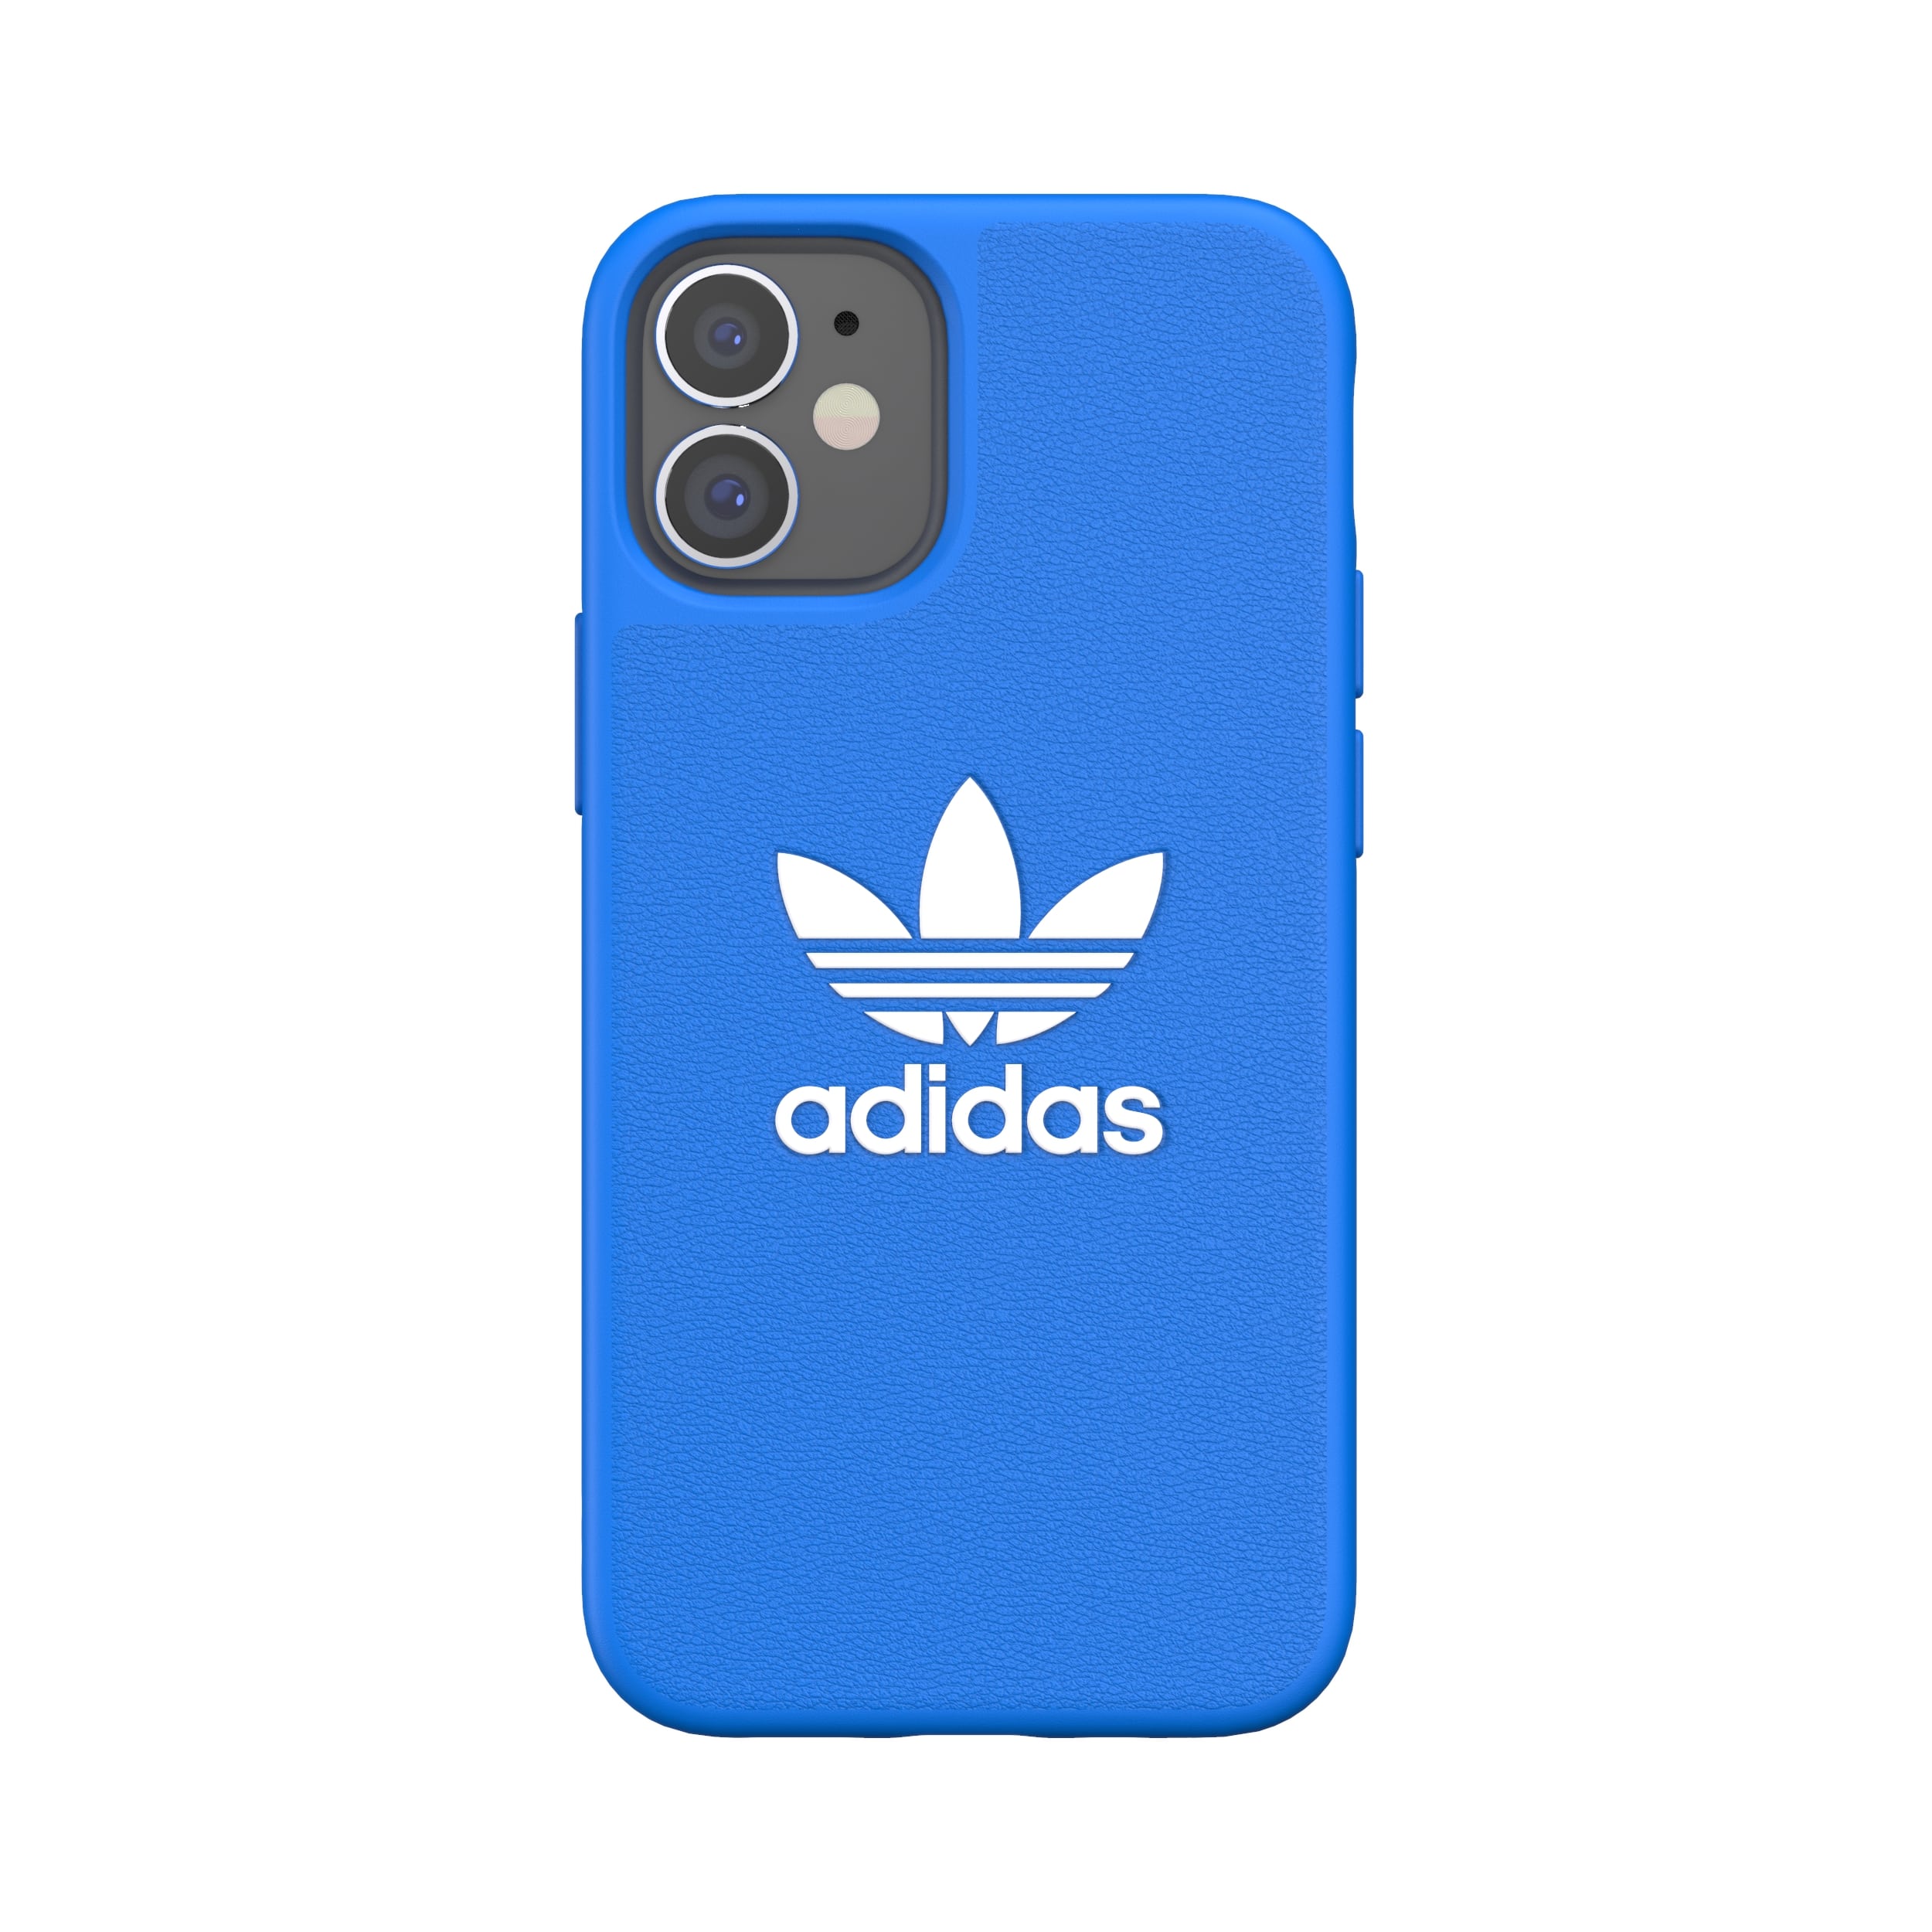 adidas アディダス スマホケース iPhone 12 Mini ケース アイフォン カバー スマホケース 耐衝撃 TPU BASIC ブルーバード 青